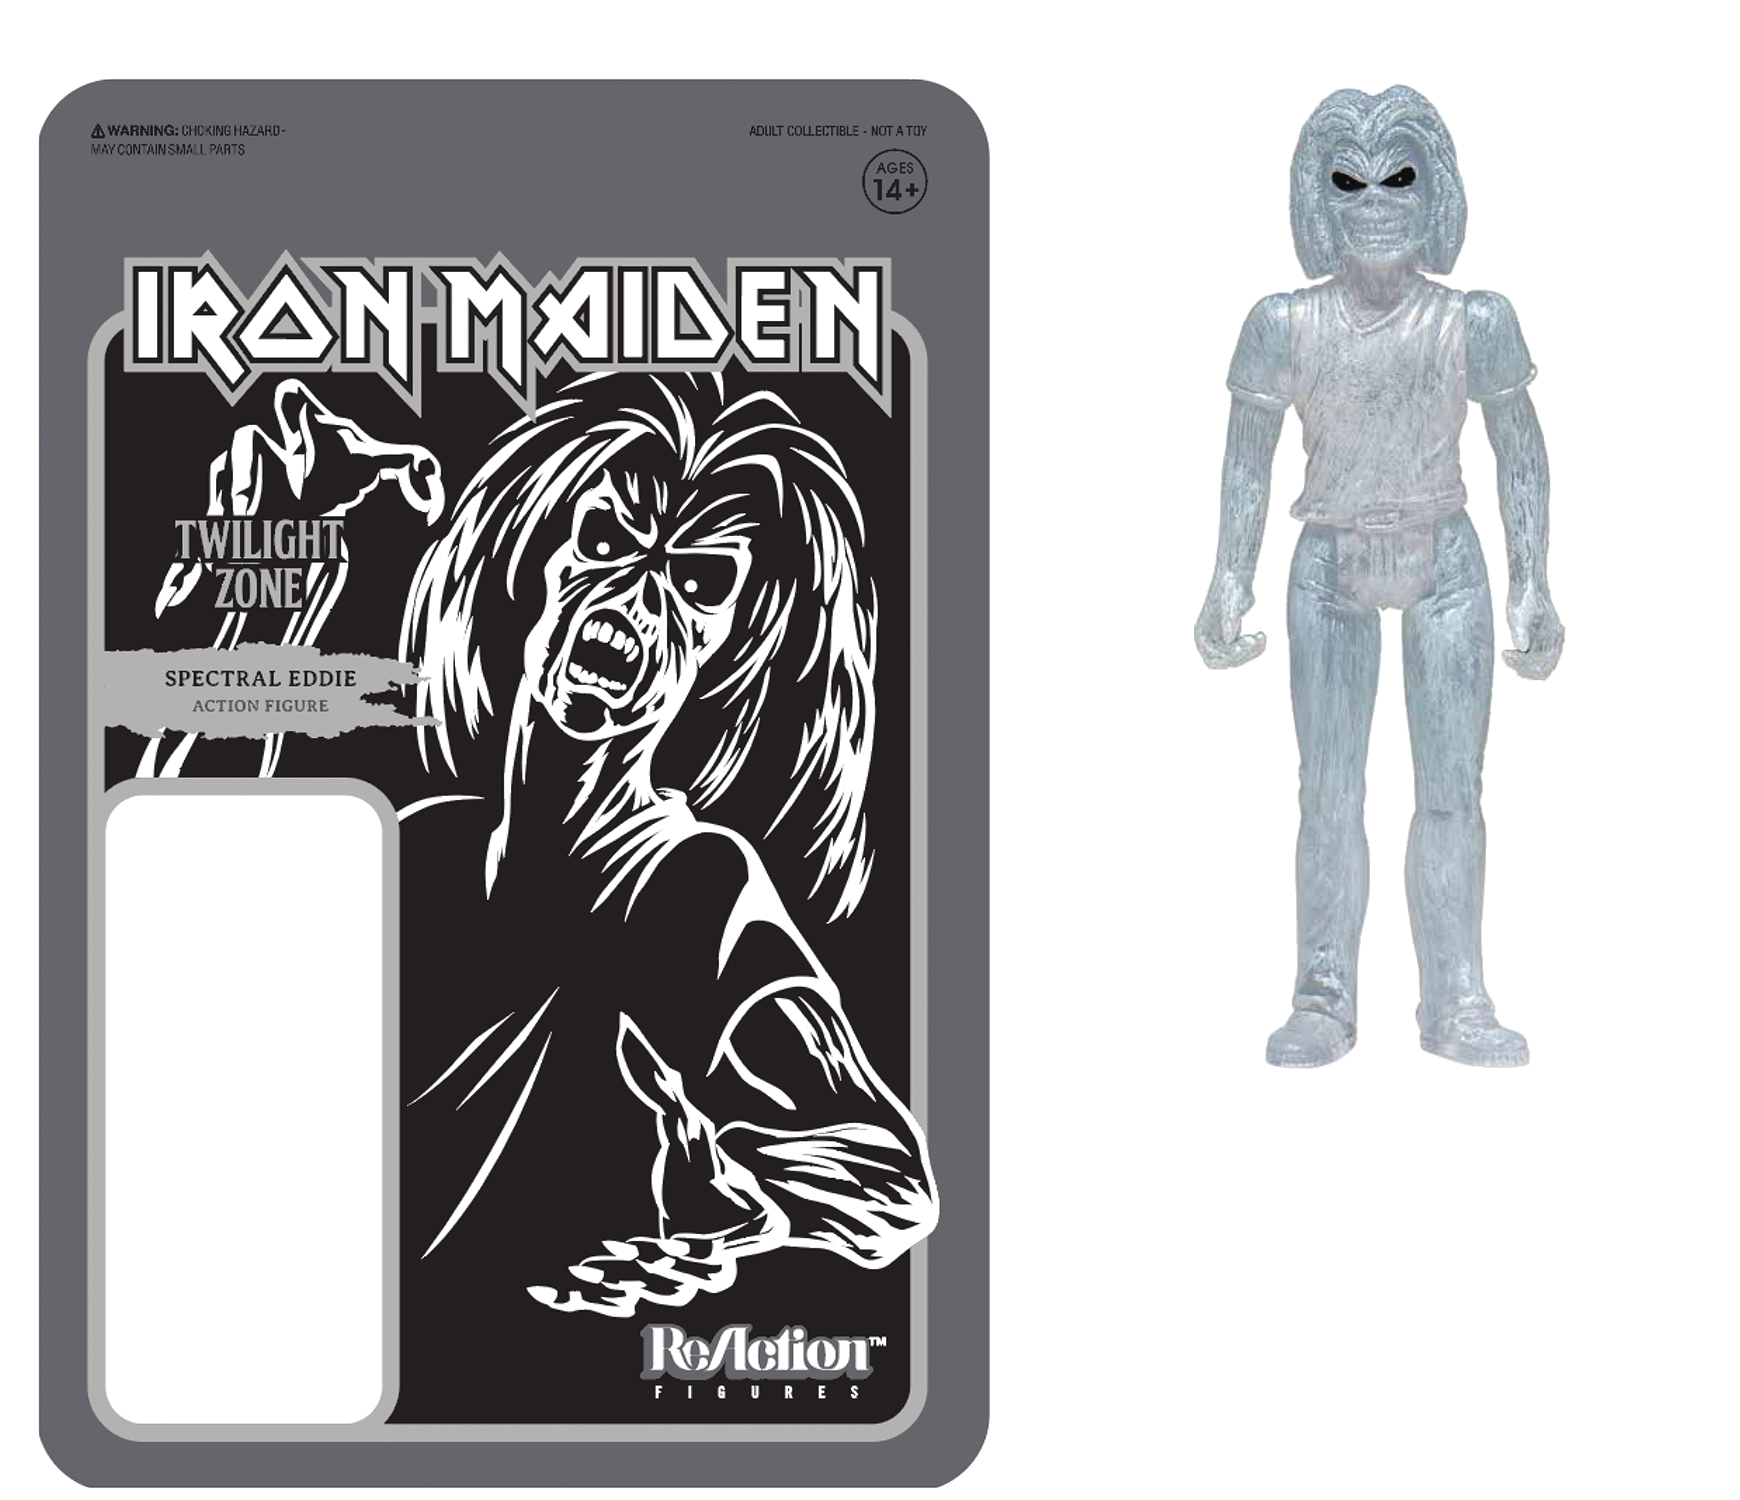 Iron Maiden Twilight Zone Spectral Eddie Reaction Figure